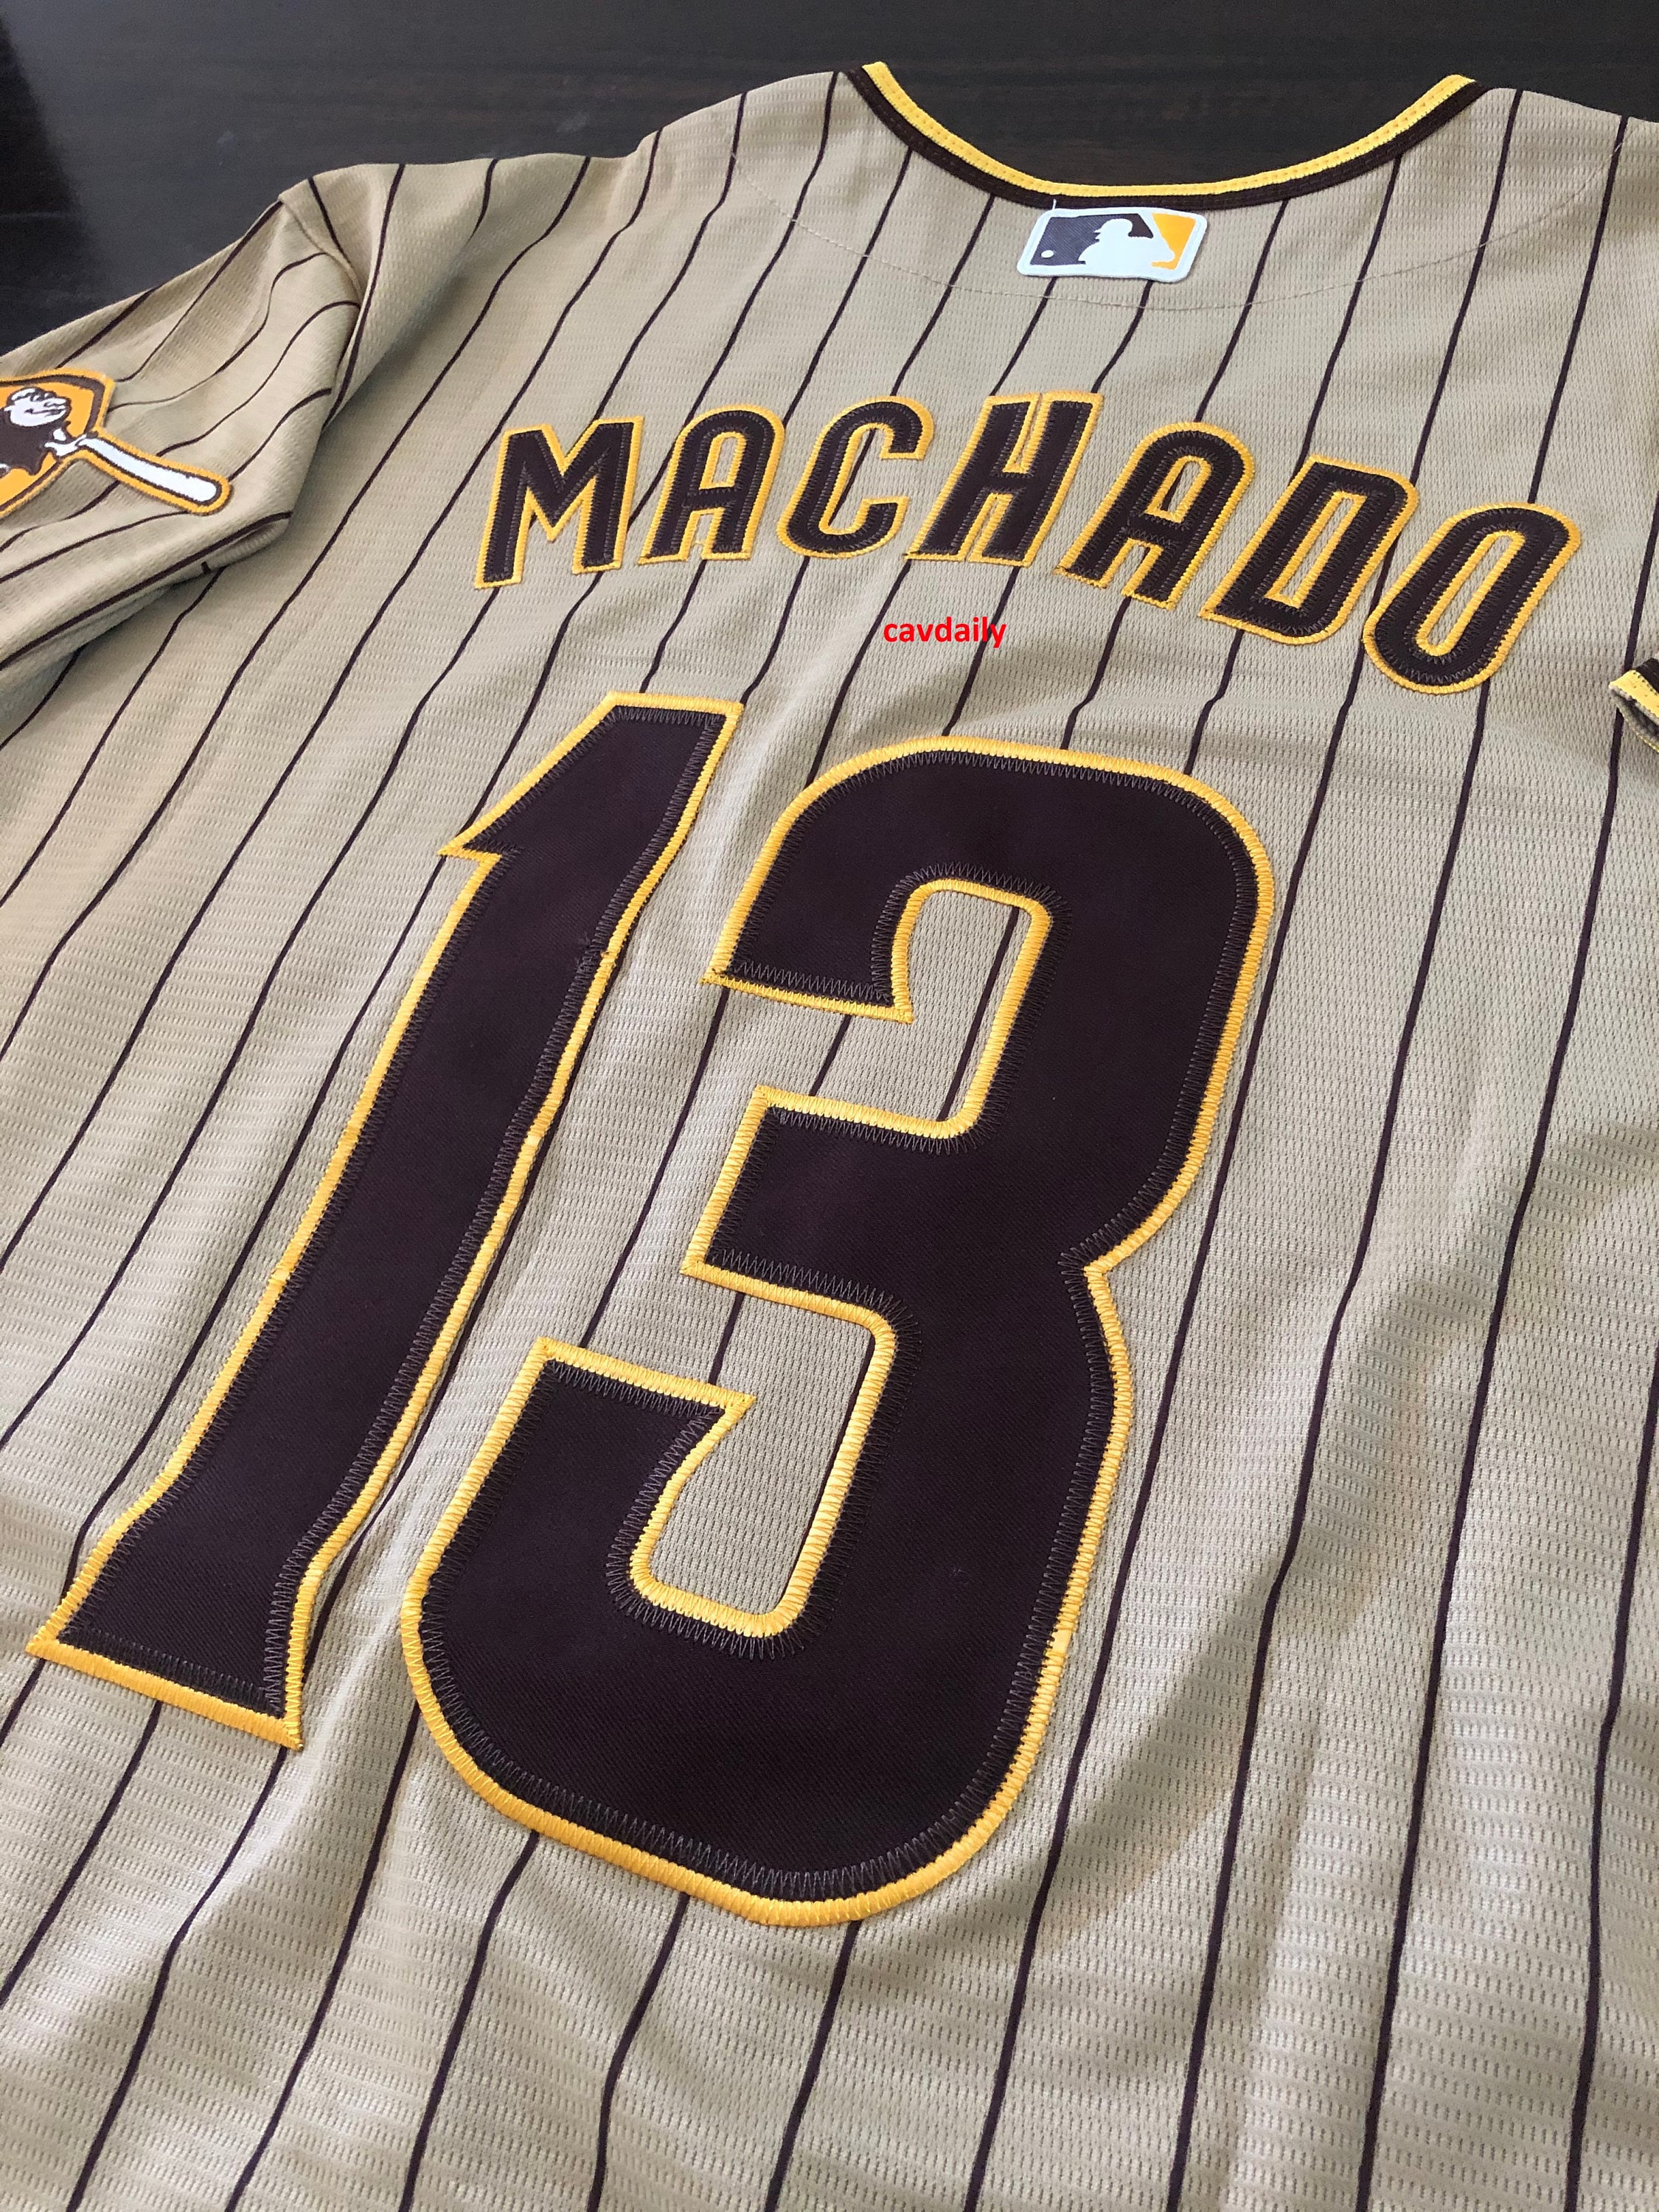 New 2023 Manny Machado San Diego Padres Stitched Jersey Tan -  Ireland